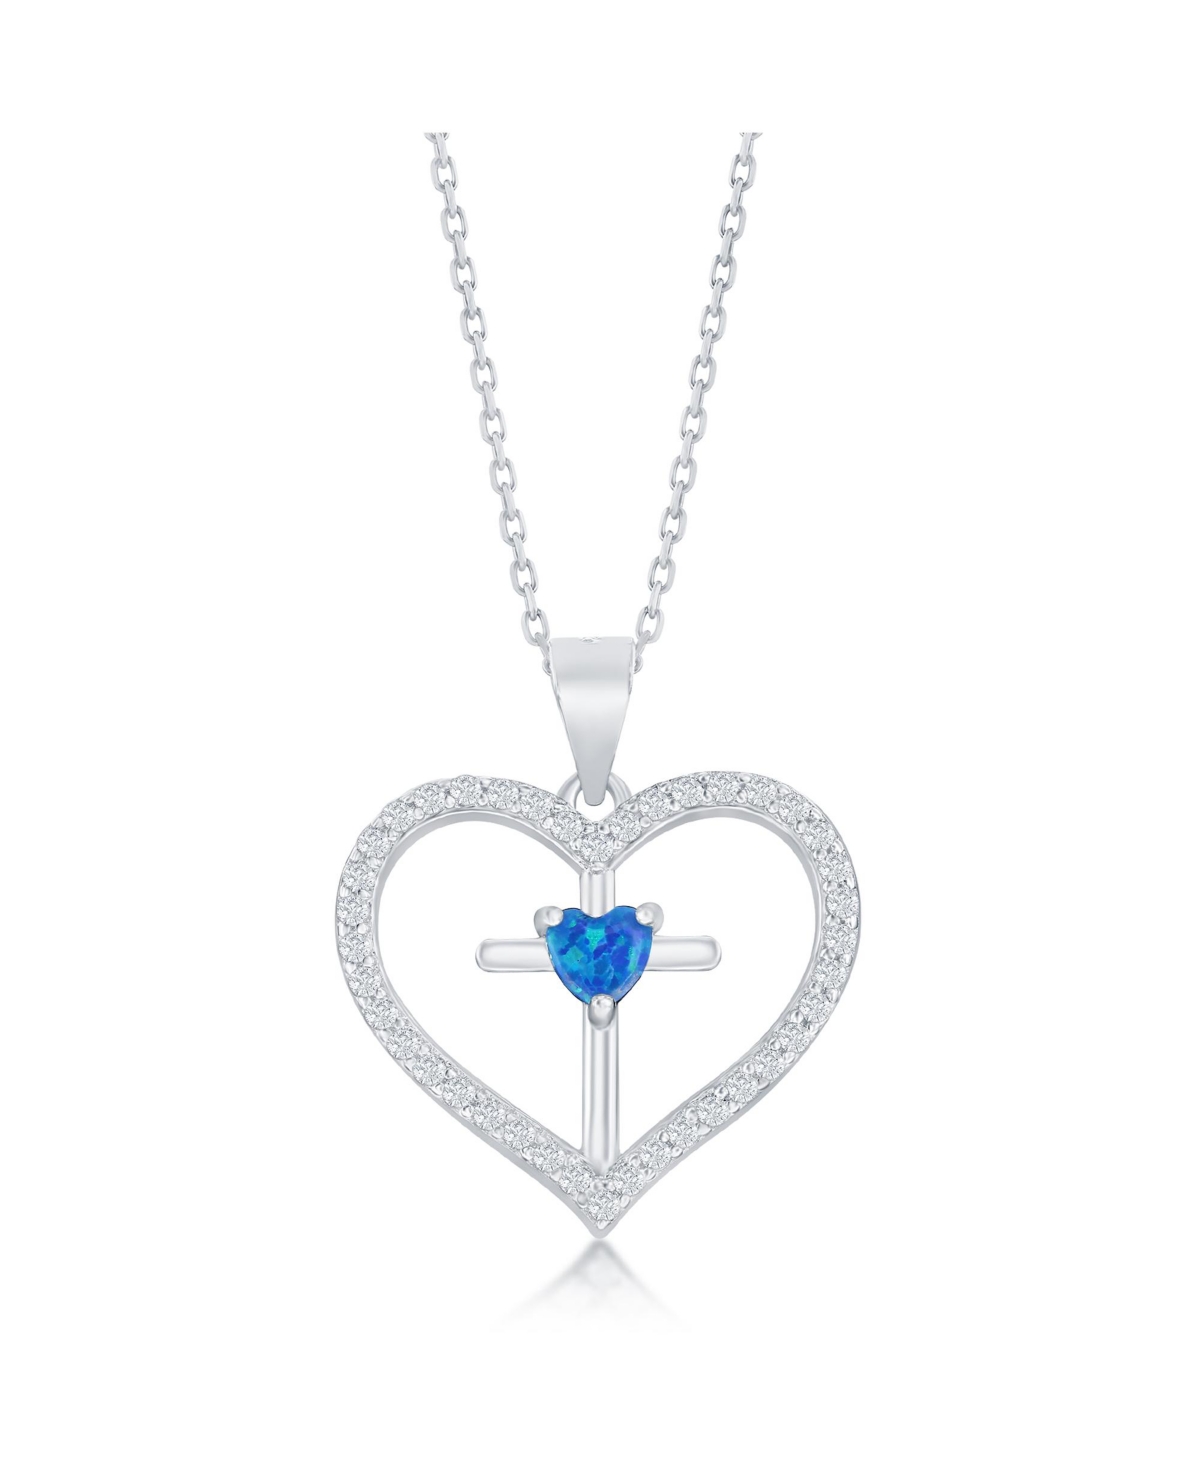 Sterling Silver Cz Cross Heart Pendant - Blue